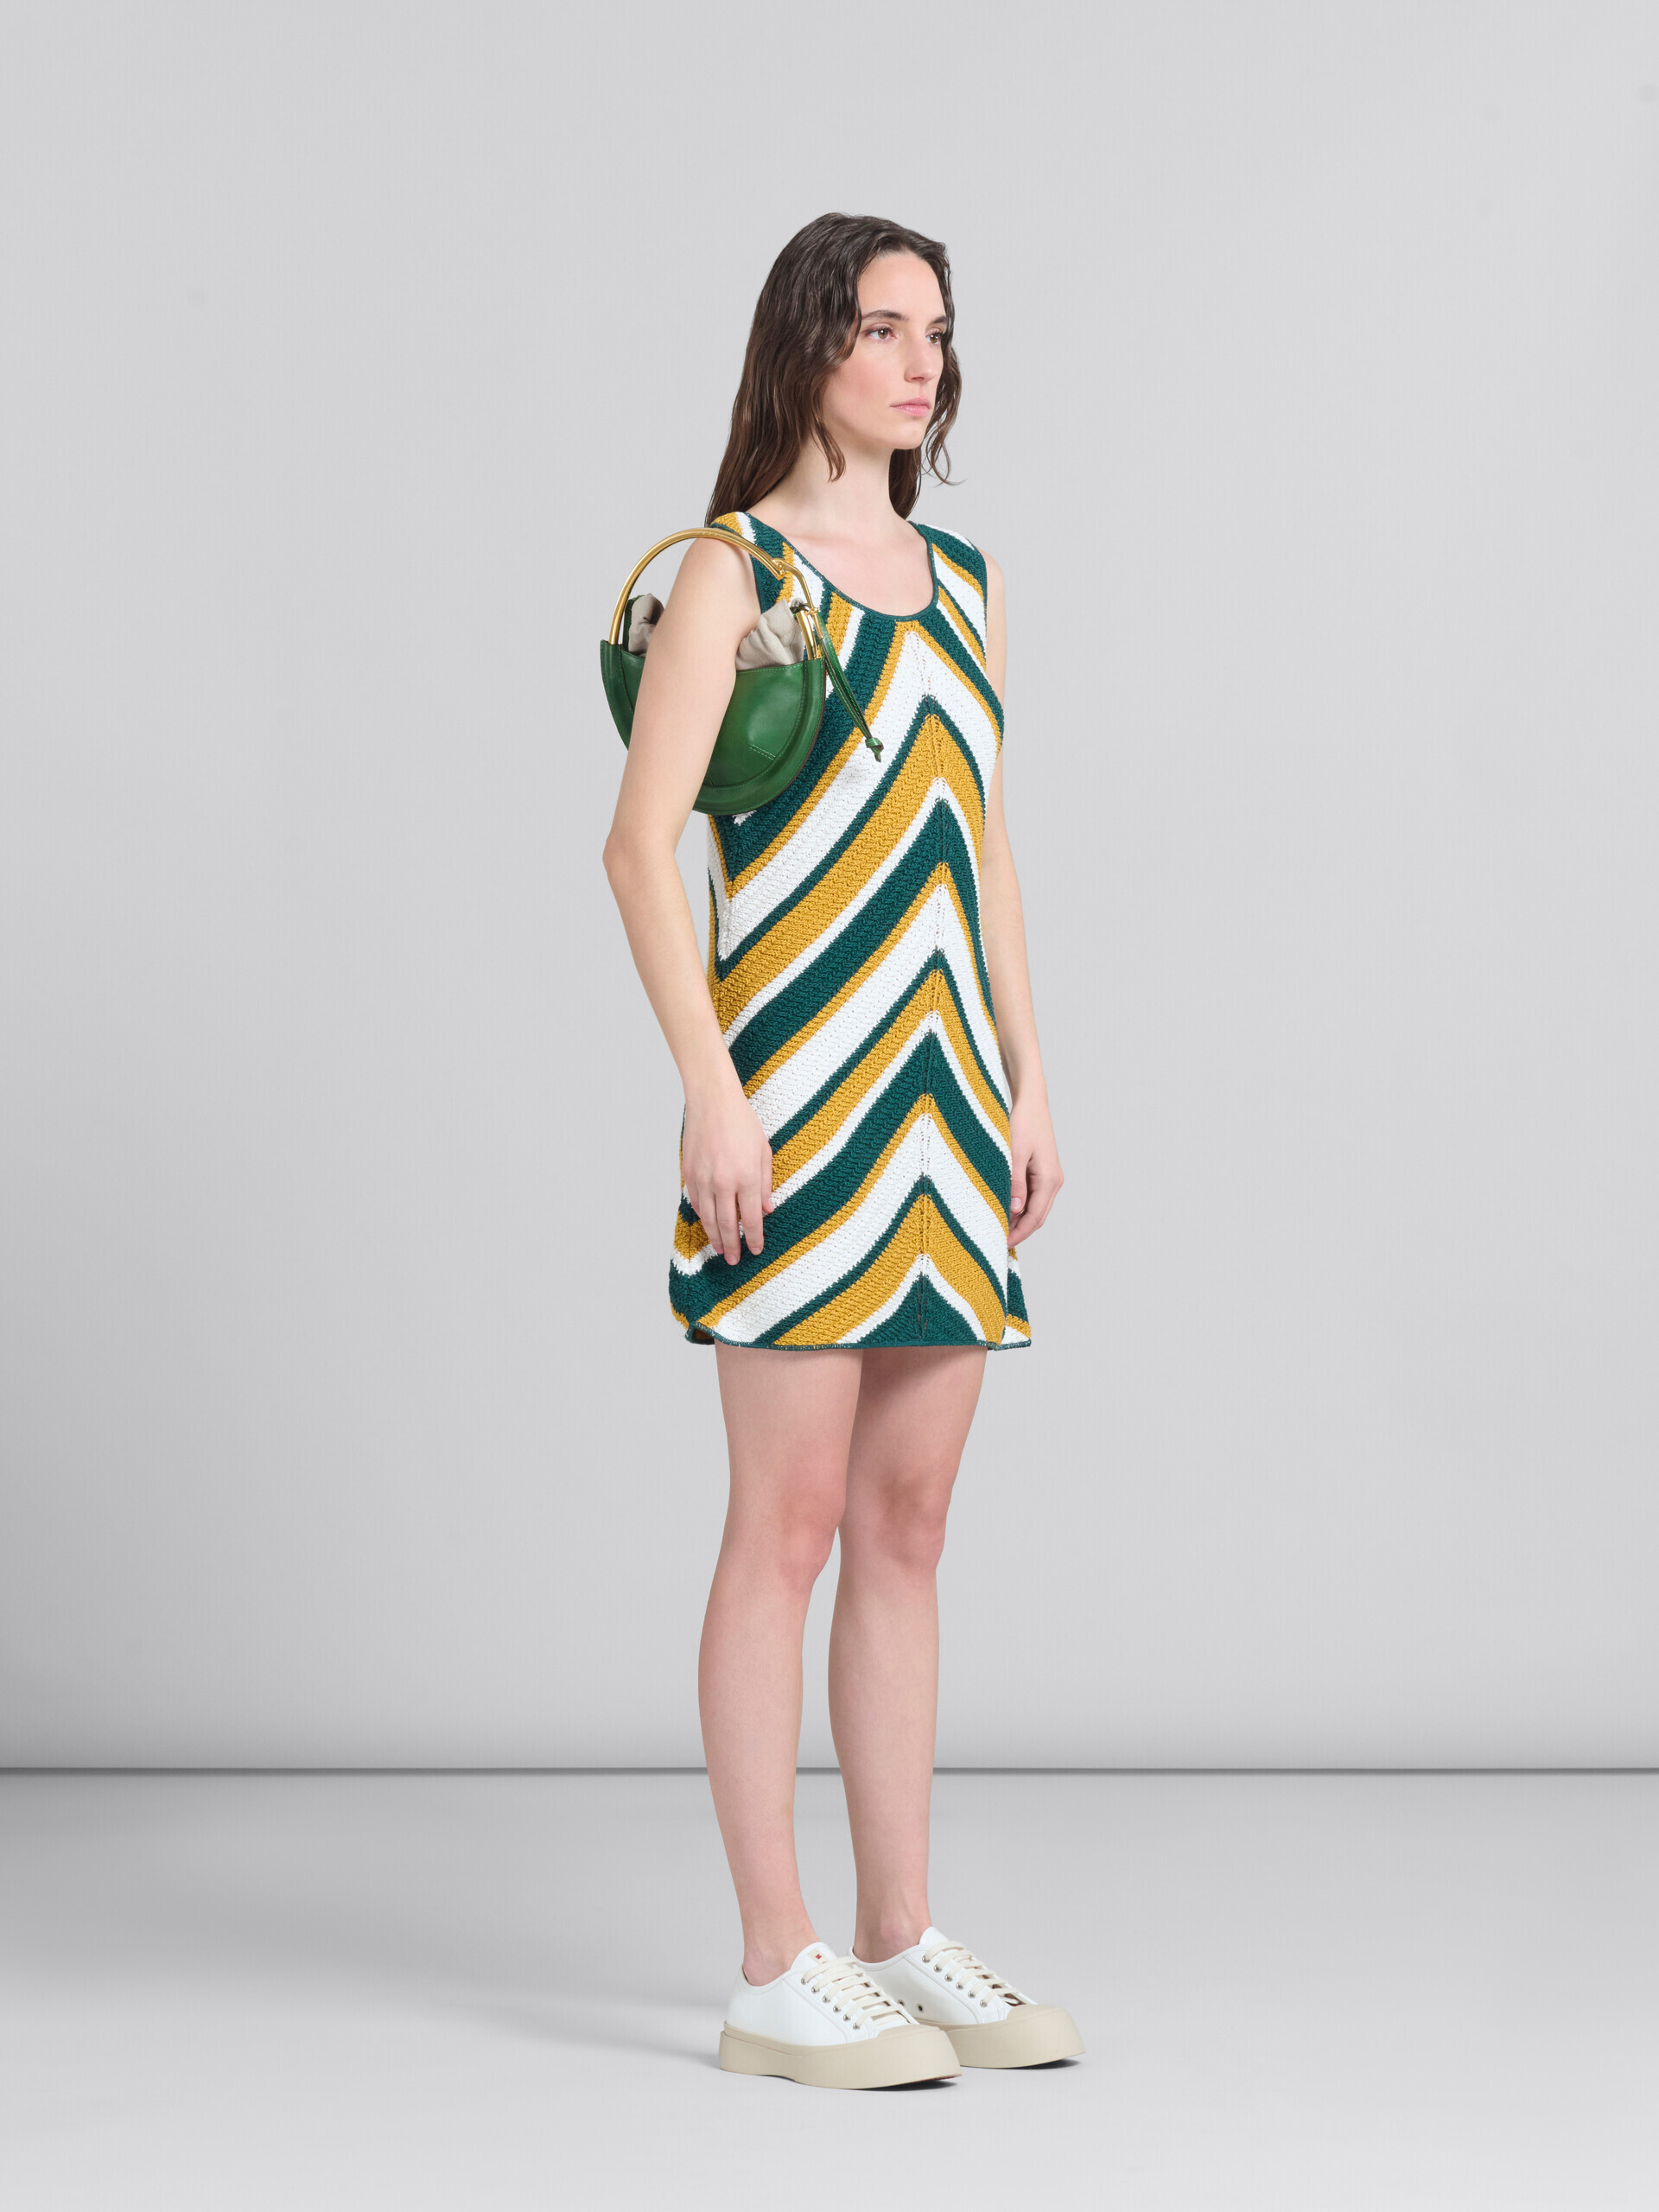 シェブロン柄のティールとイエローのクロッシェレースドレス - ドレス - Image 6